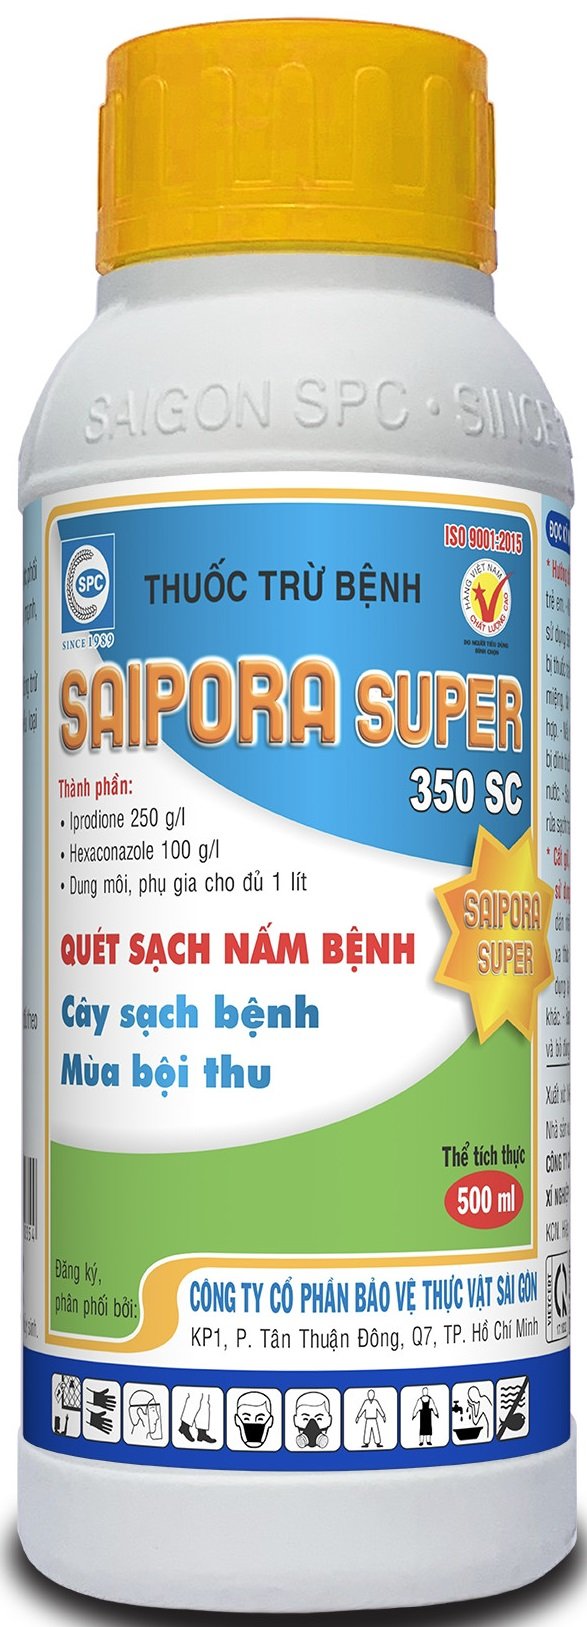 SAIPORA  SUPER 350SC thuốc trừ bệnh khô vằn hại lúa hiệu quả của Công ty CP BVTV Sài Gòn - SPC.